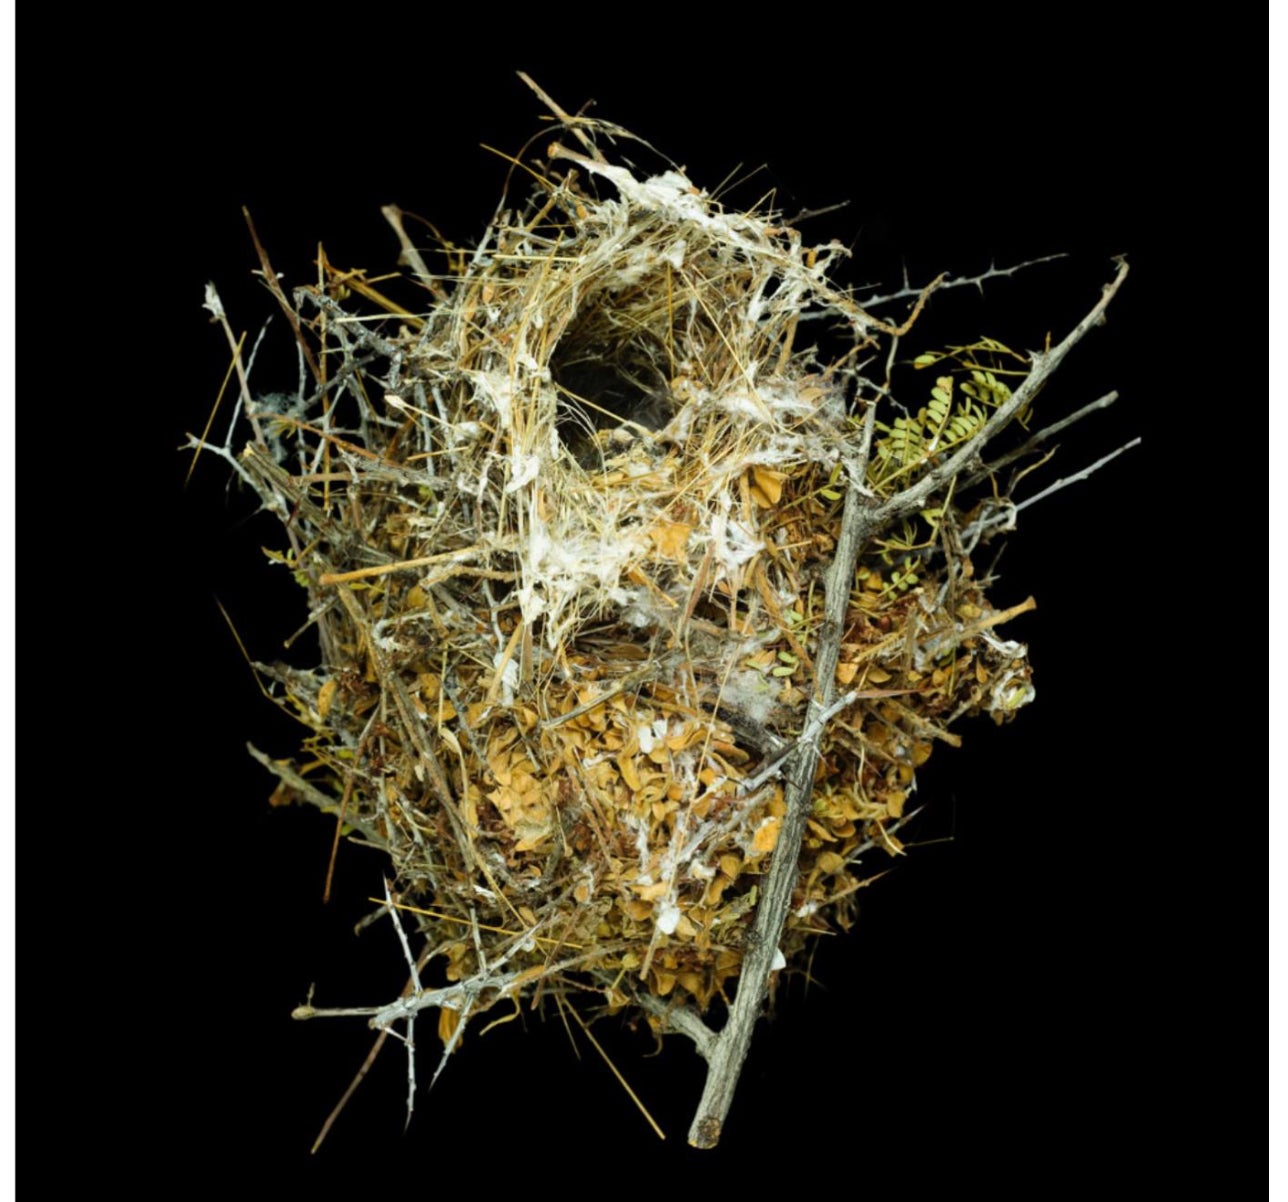 Lithographie d'un nid de Sharon Beals - Flaviceps d'Auriparus verts